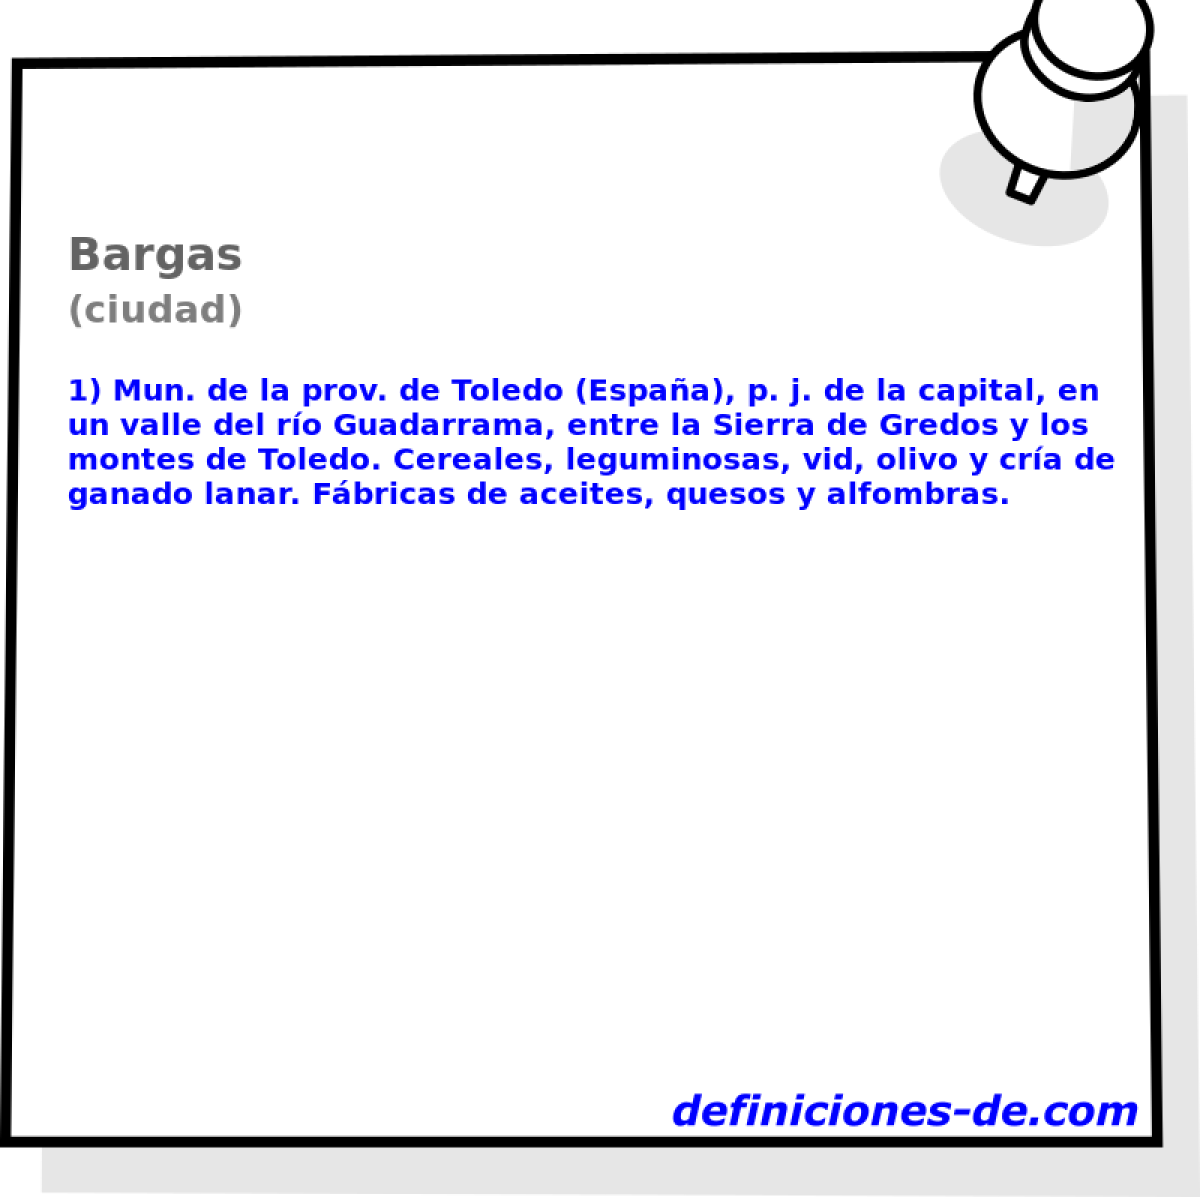 Bargas (ciudad)